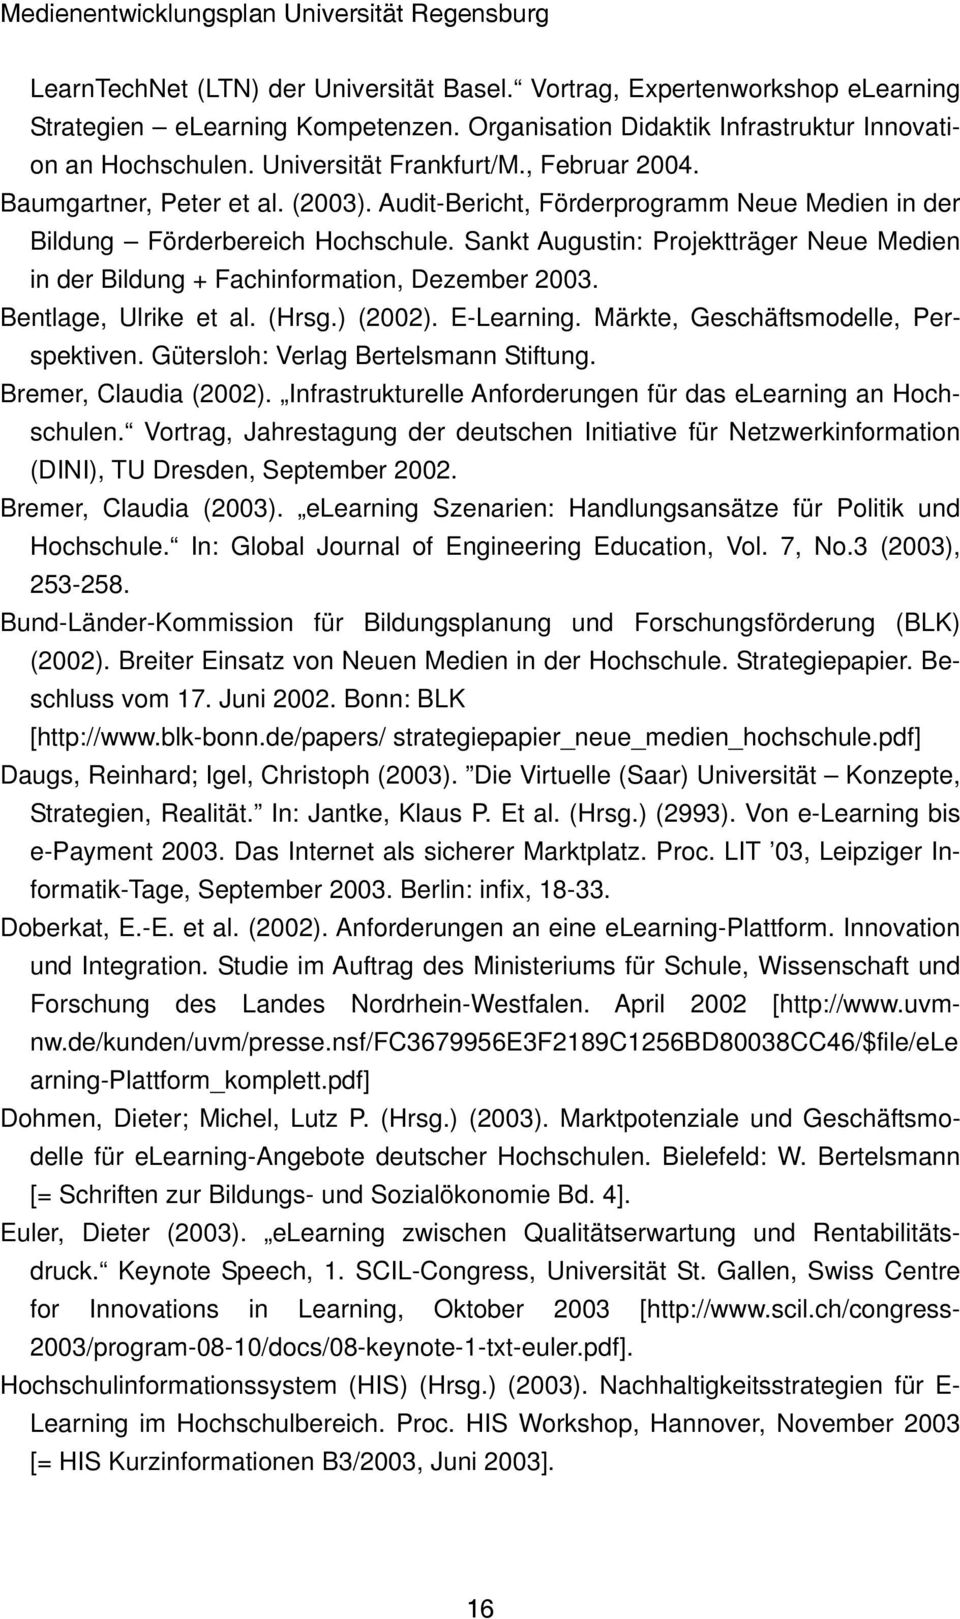 Sankt Augustin: Projektträger Neue Medien in der Bildung + Fachinformation, Dezember 2003. Bentlage, Ulrike et al. (Hrsg.) (2002). E-Learning. Märkte, Geschäftsmodelle, Perspektiven.